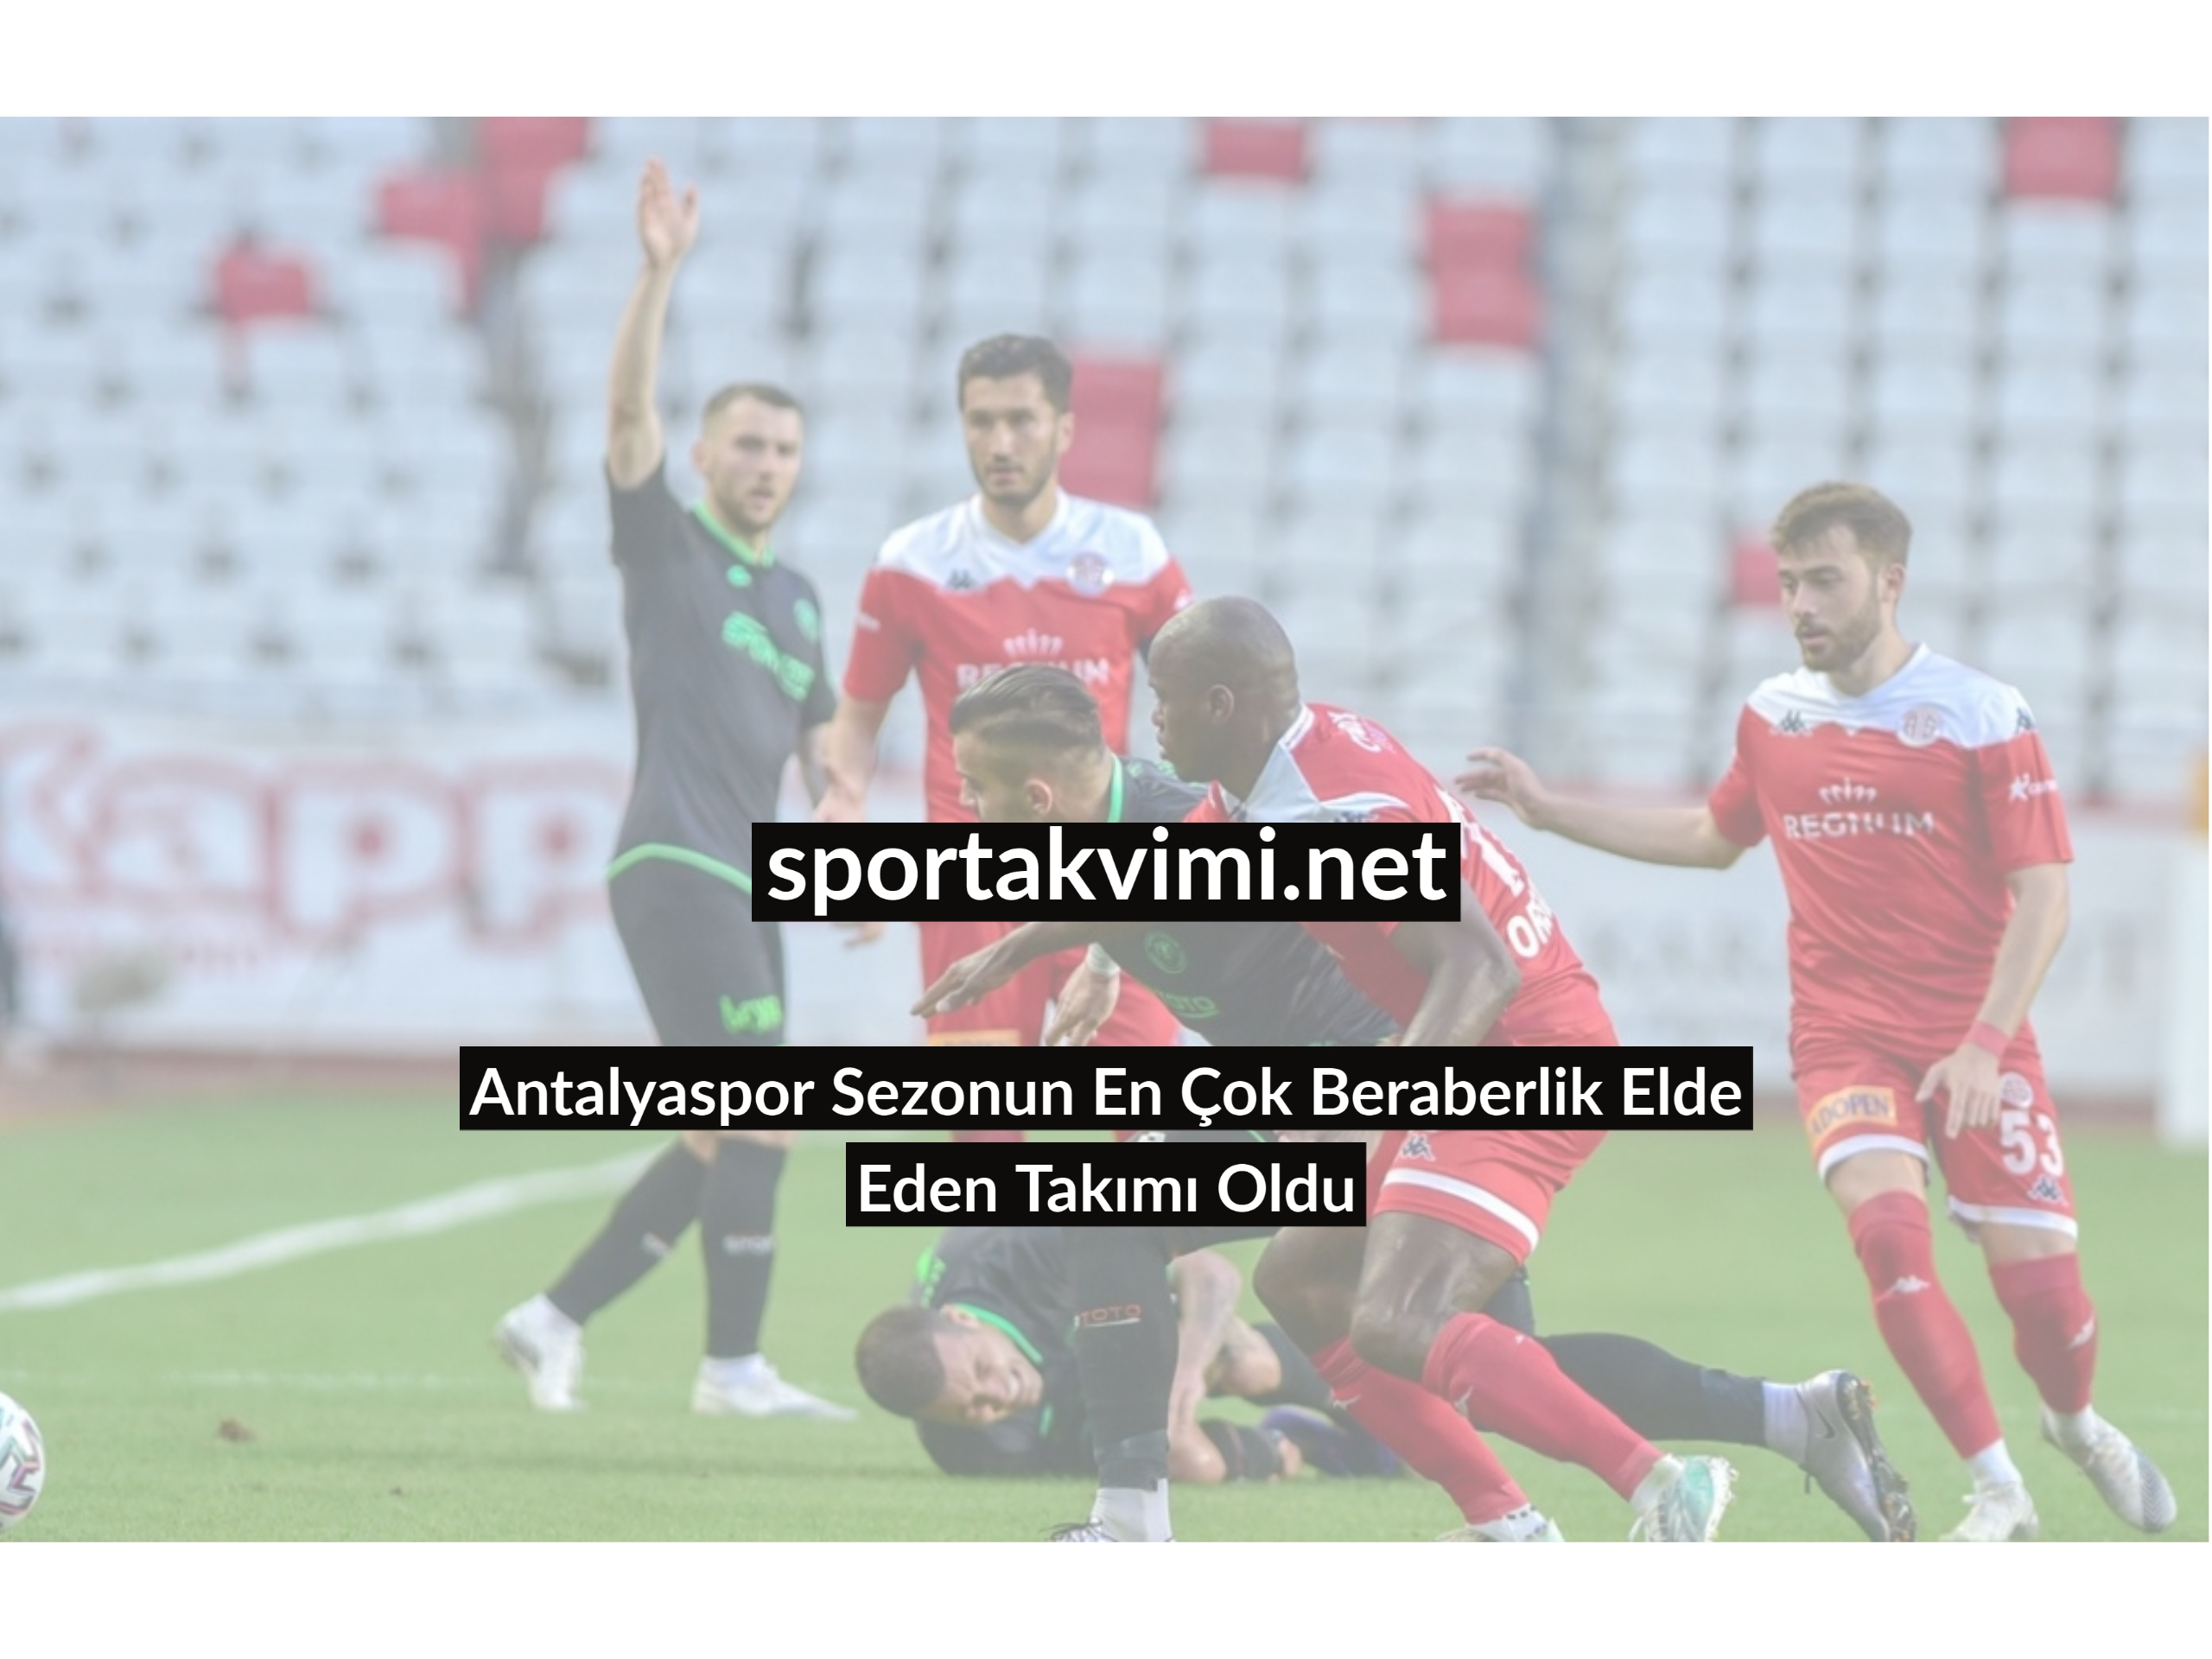 Antalyaspor Sezonun En Çok Beraberlik Elde Eden Takımı Oldu